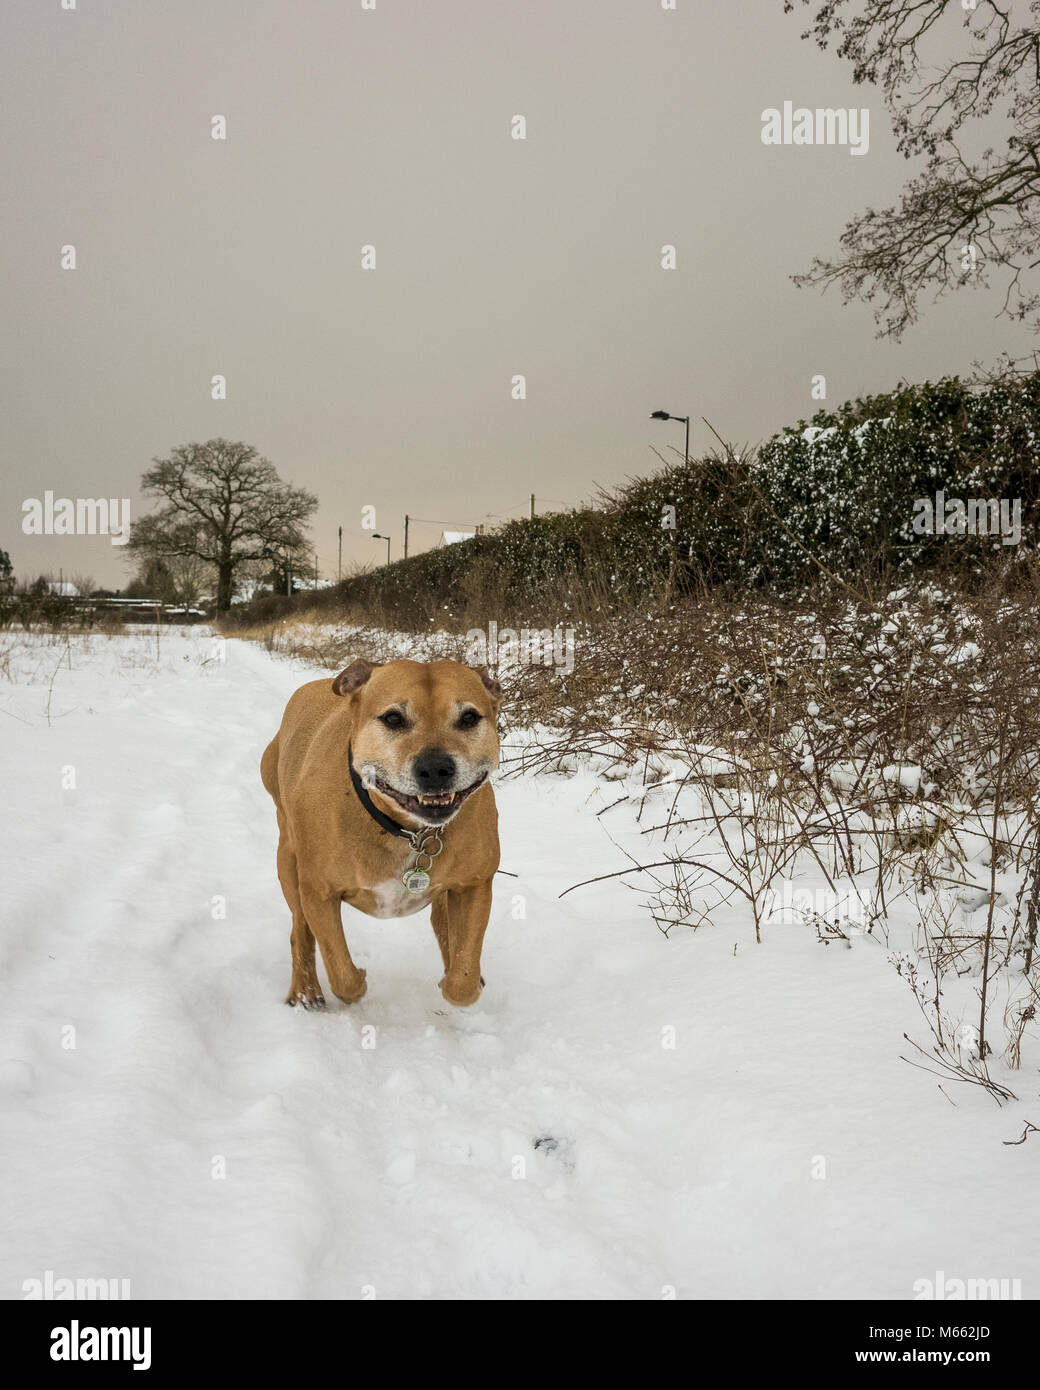 Ipswich, England. 28. Februar 2018. Eine alte Staffordshire Bull Terrier Hund, SBT, genießen Sie den Schnee in dem kalten Wetter. Das Wetter war in aus Sibirien gebracht und benannt, das Tier aus dem Osten. Der Hund läuft um und Spielen im Schnee. Mit einer Ricoh GRII Kamera fotografiert. Stockfoto